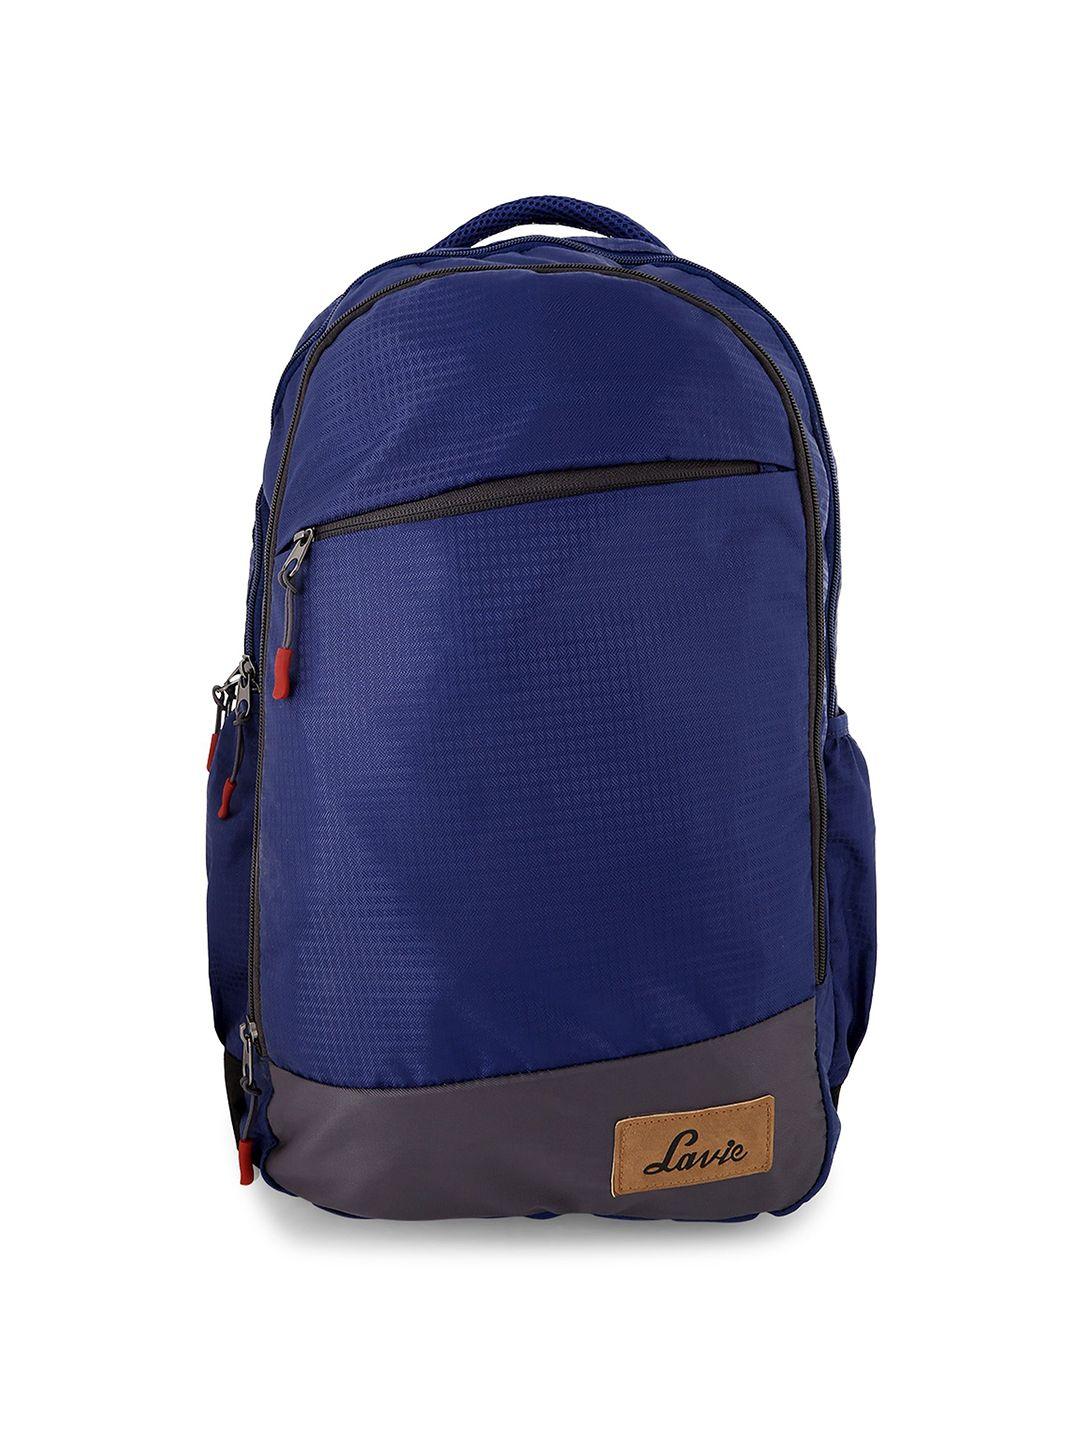 lavie sport unisex navy blue backpack